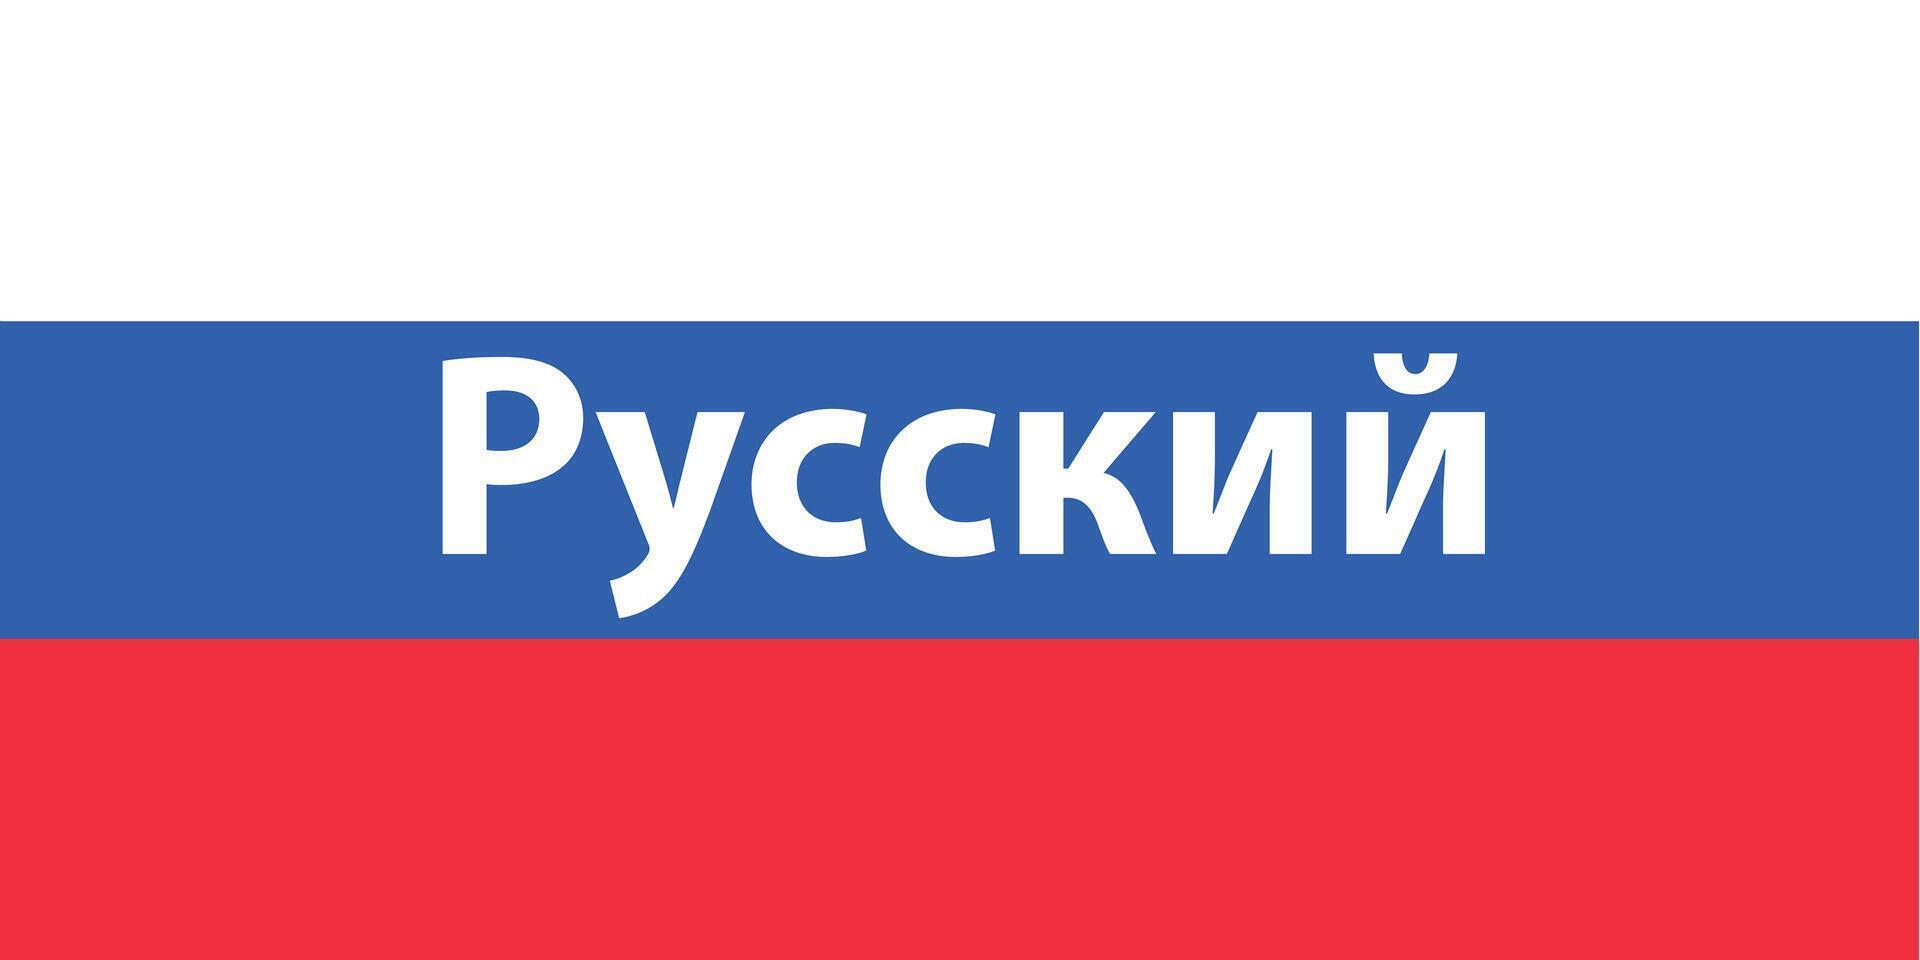 Parlant russe. mot sur drapeau de Russie, bannière vecteur